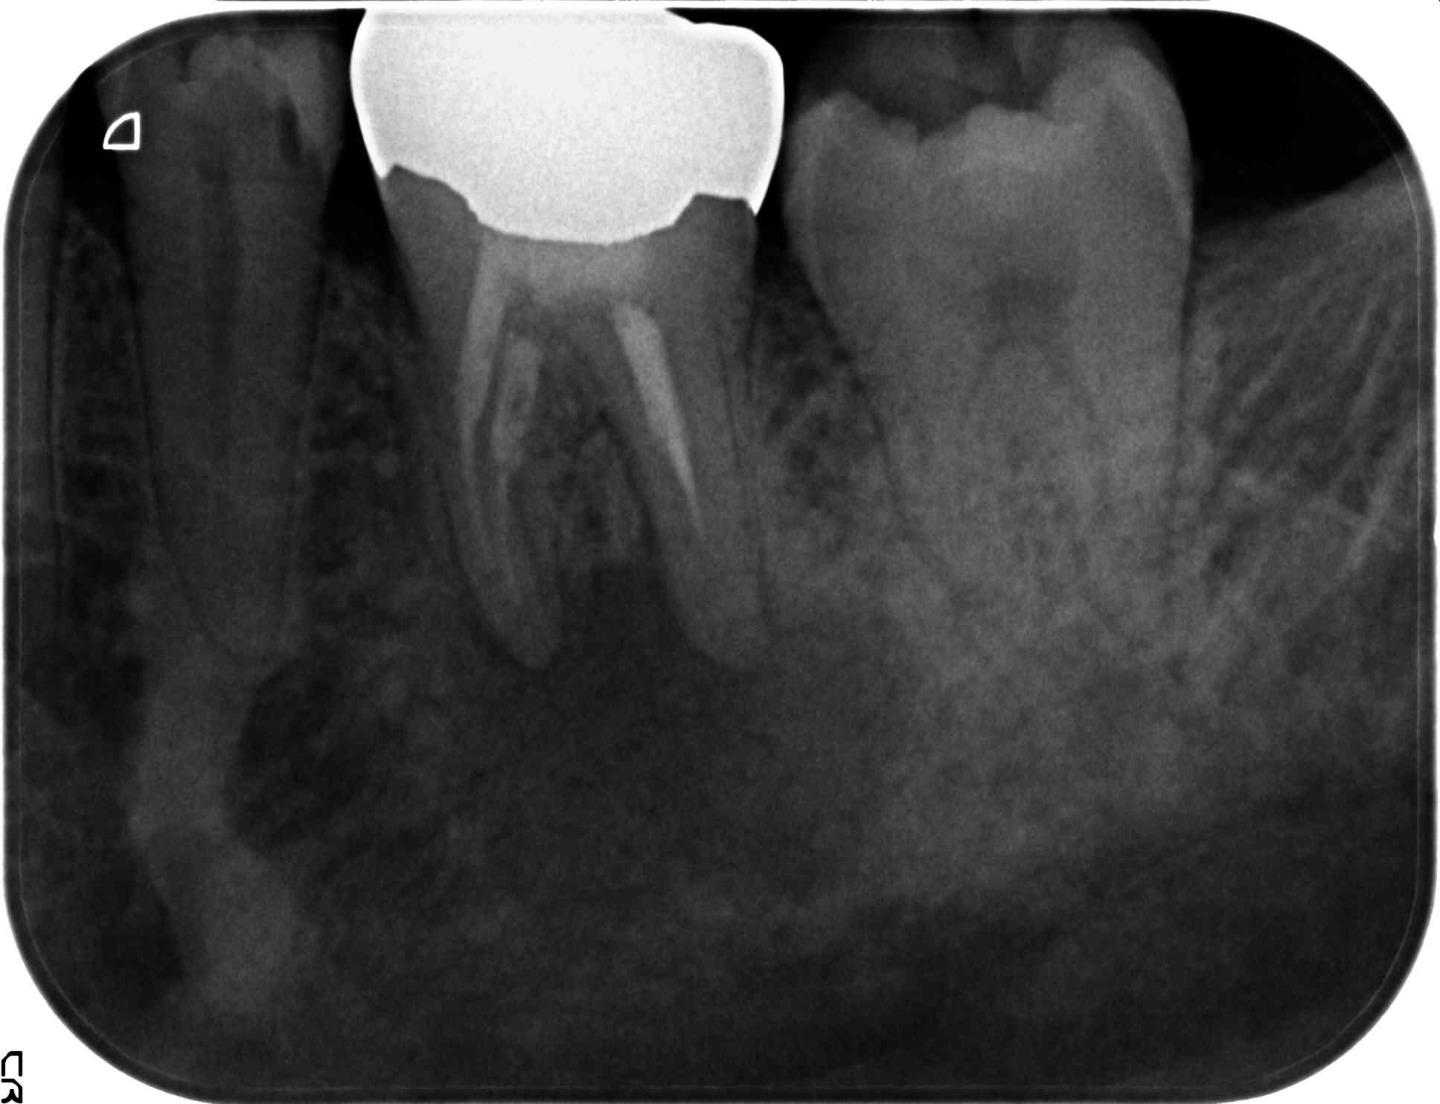 1.根の先端部分に炎症を示す黒い透過像を認める（慢性根尖性歯周組織炎の疑い）。根管内の感染が強く疑われる症例。